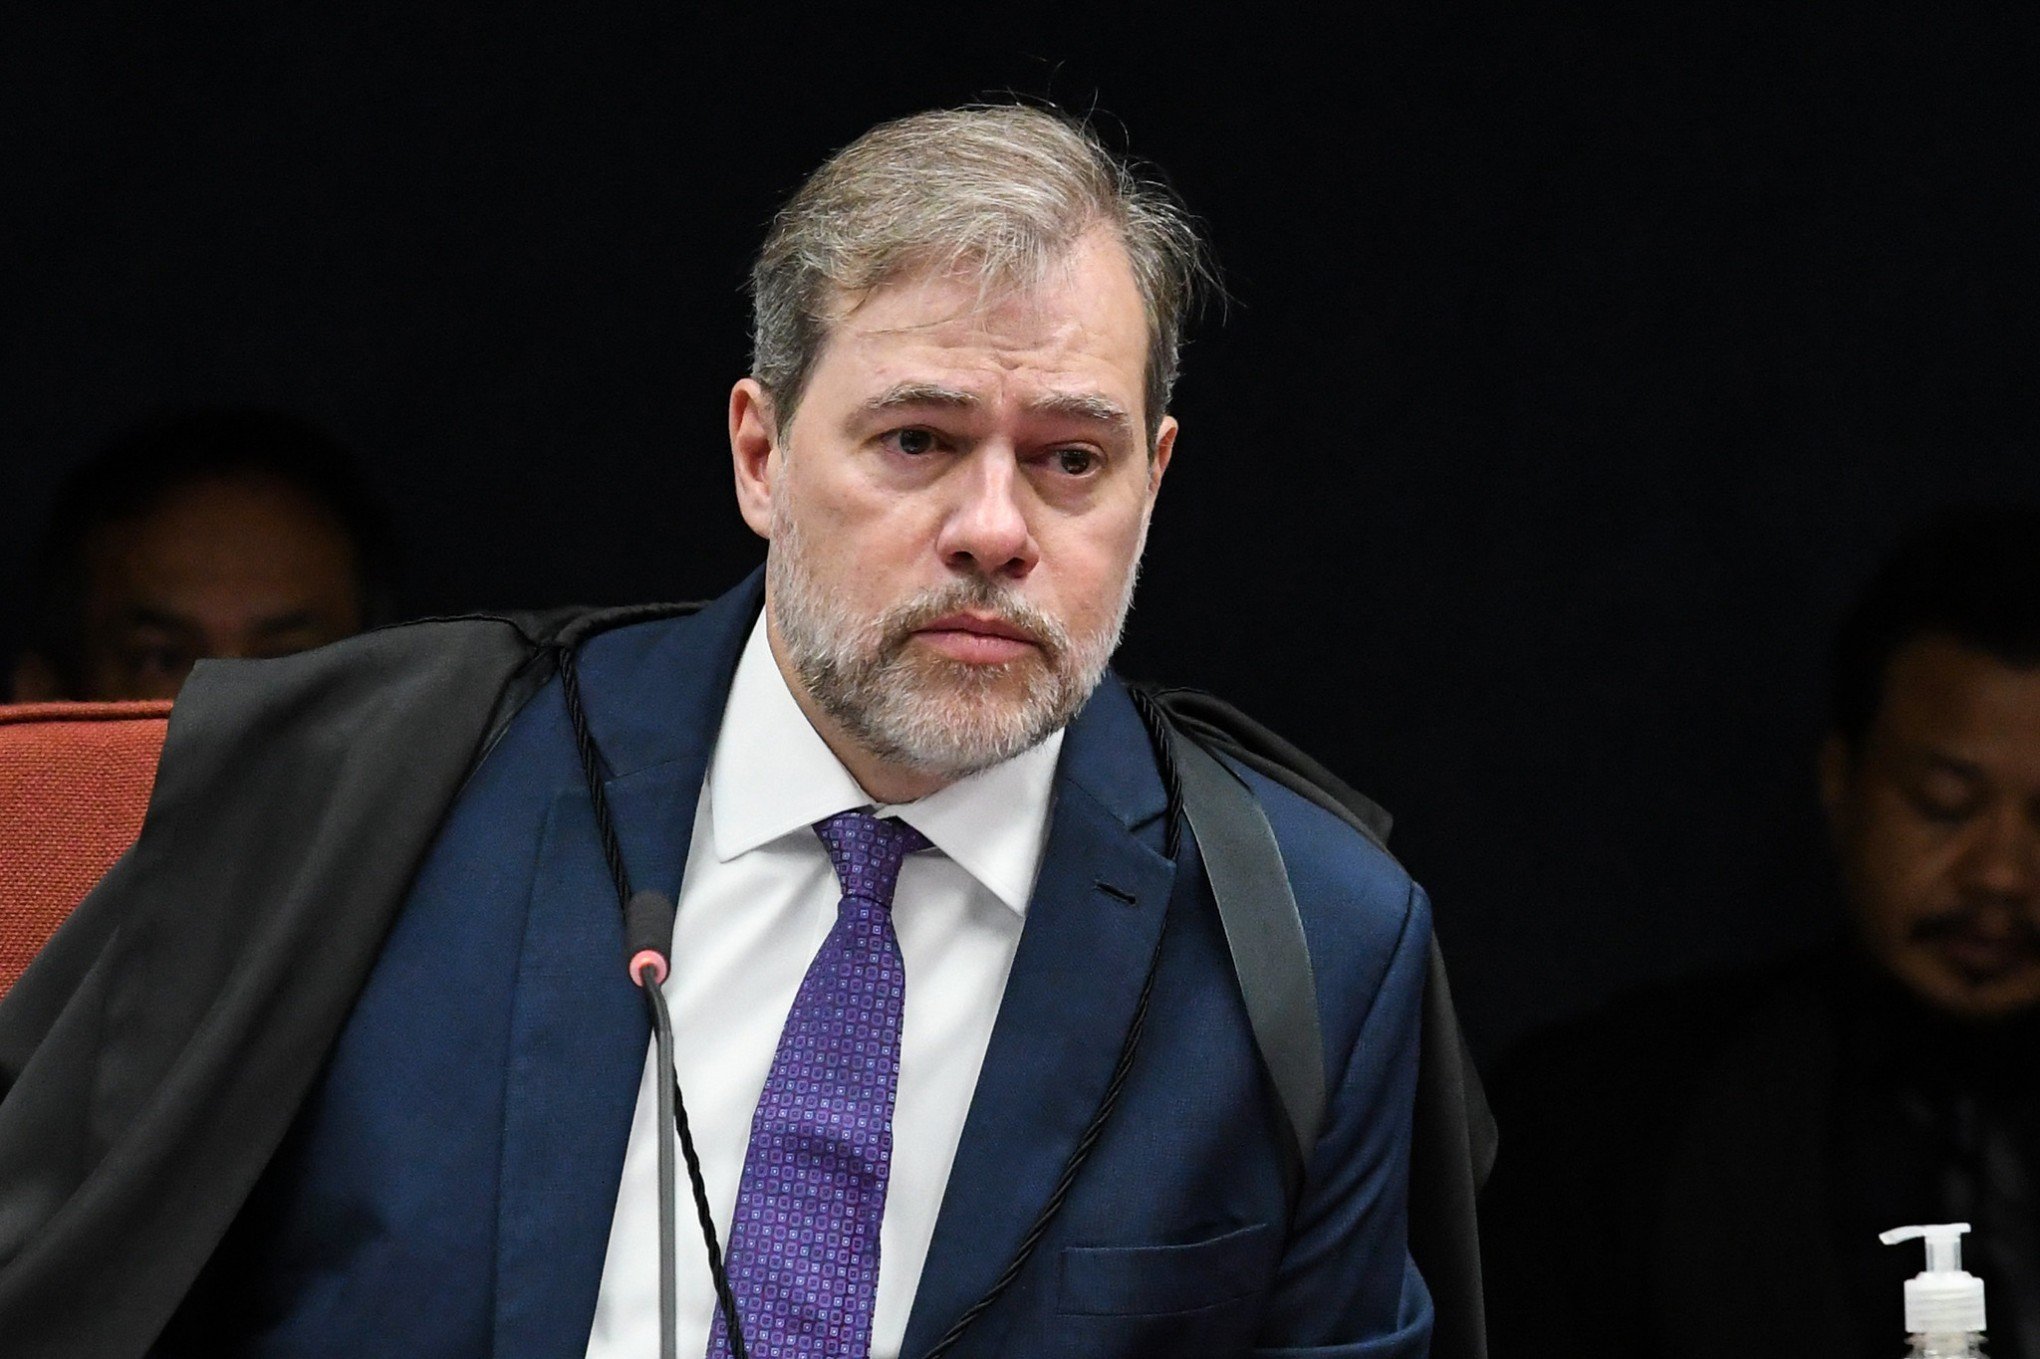 BOATE KISS: Ministro do STF suspende novo júri popular que ocorreria neste mês